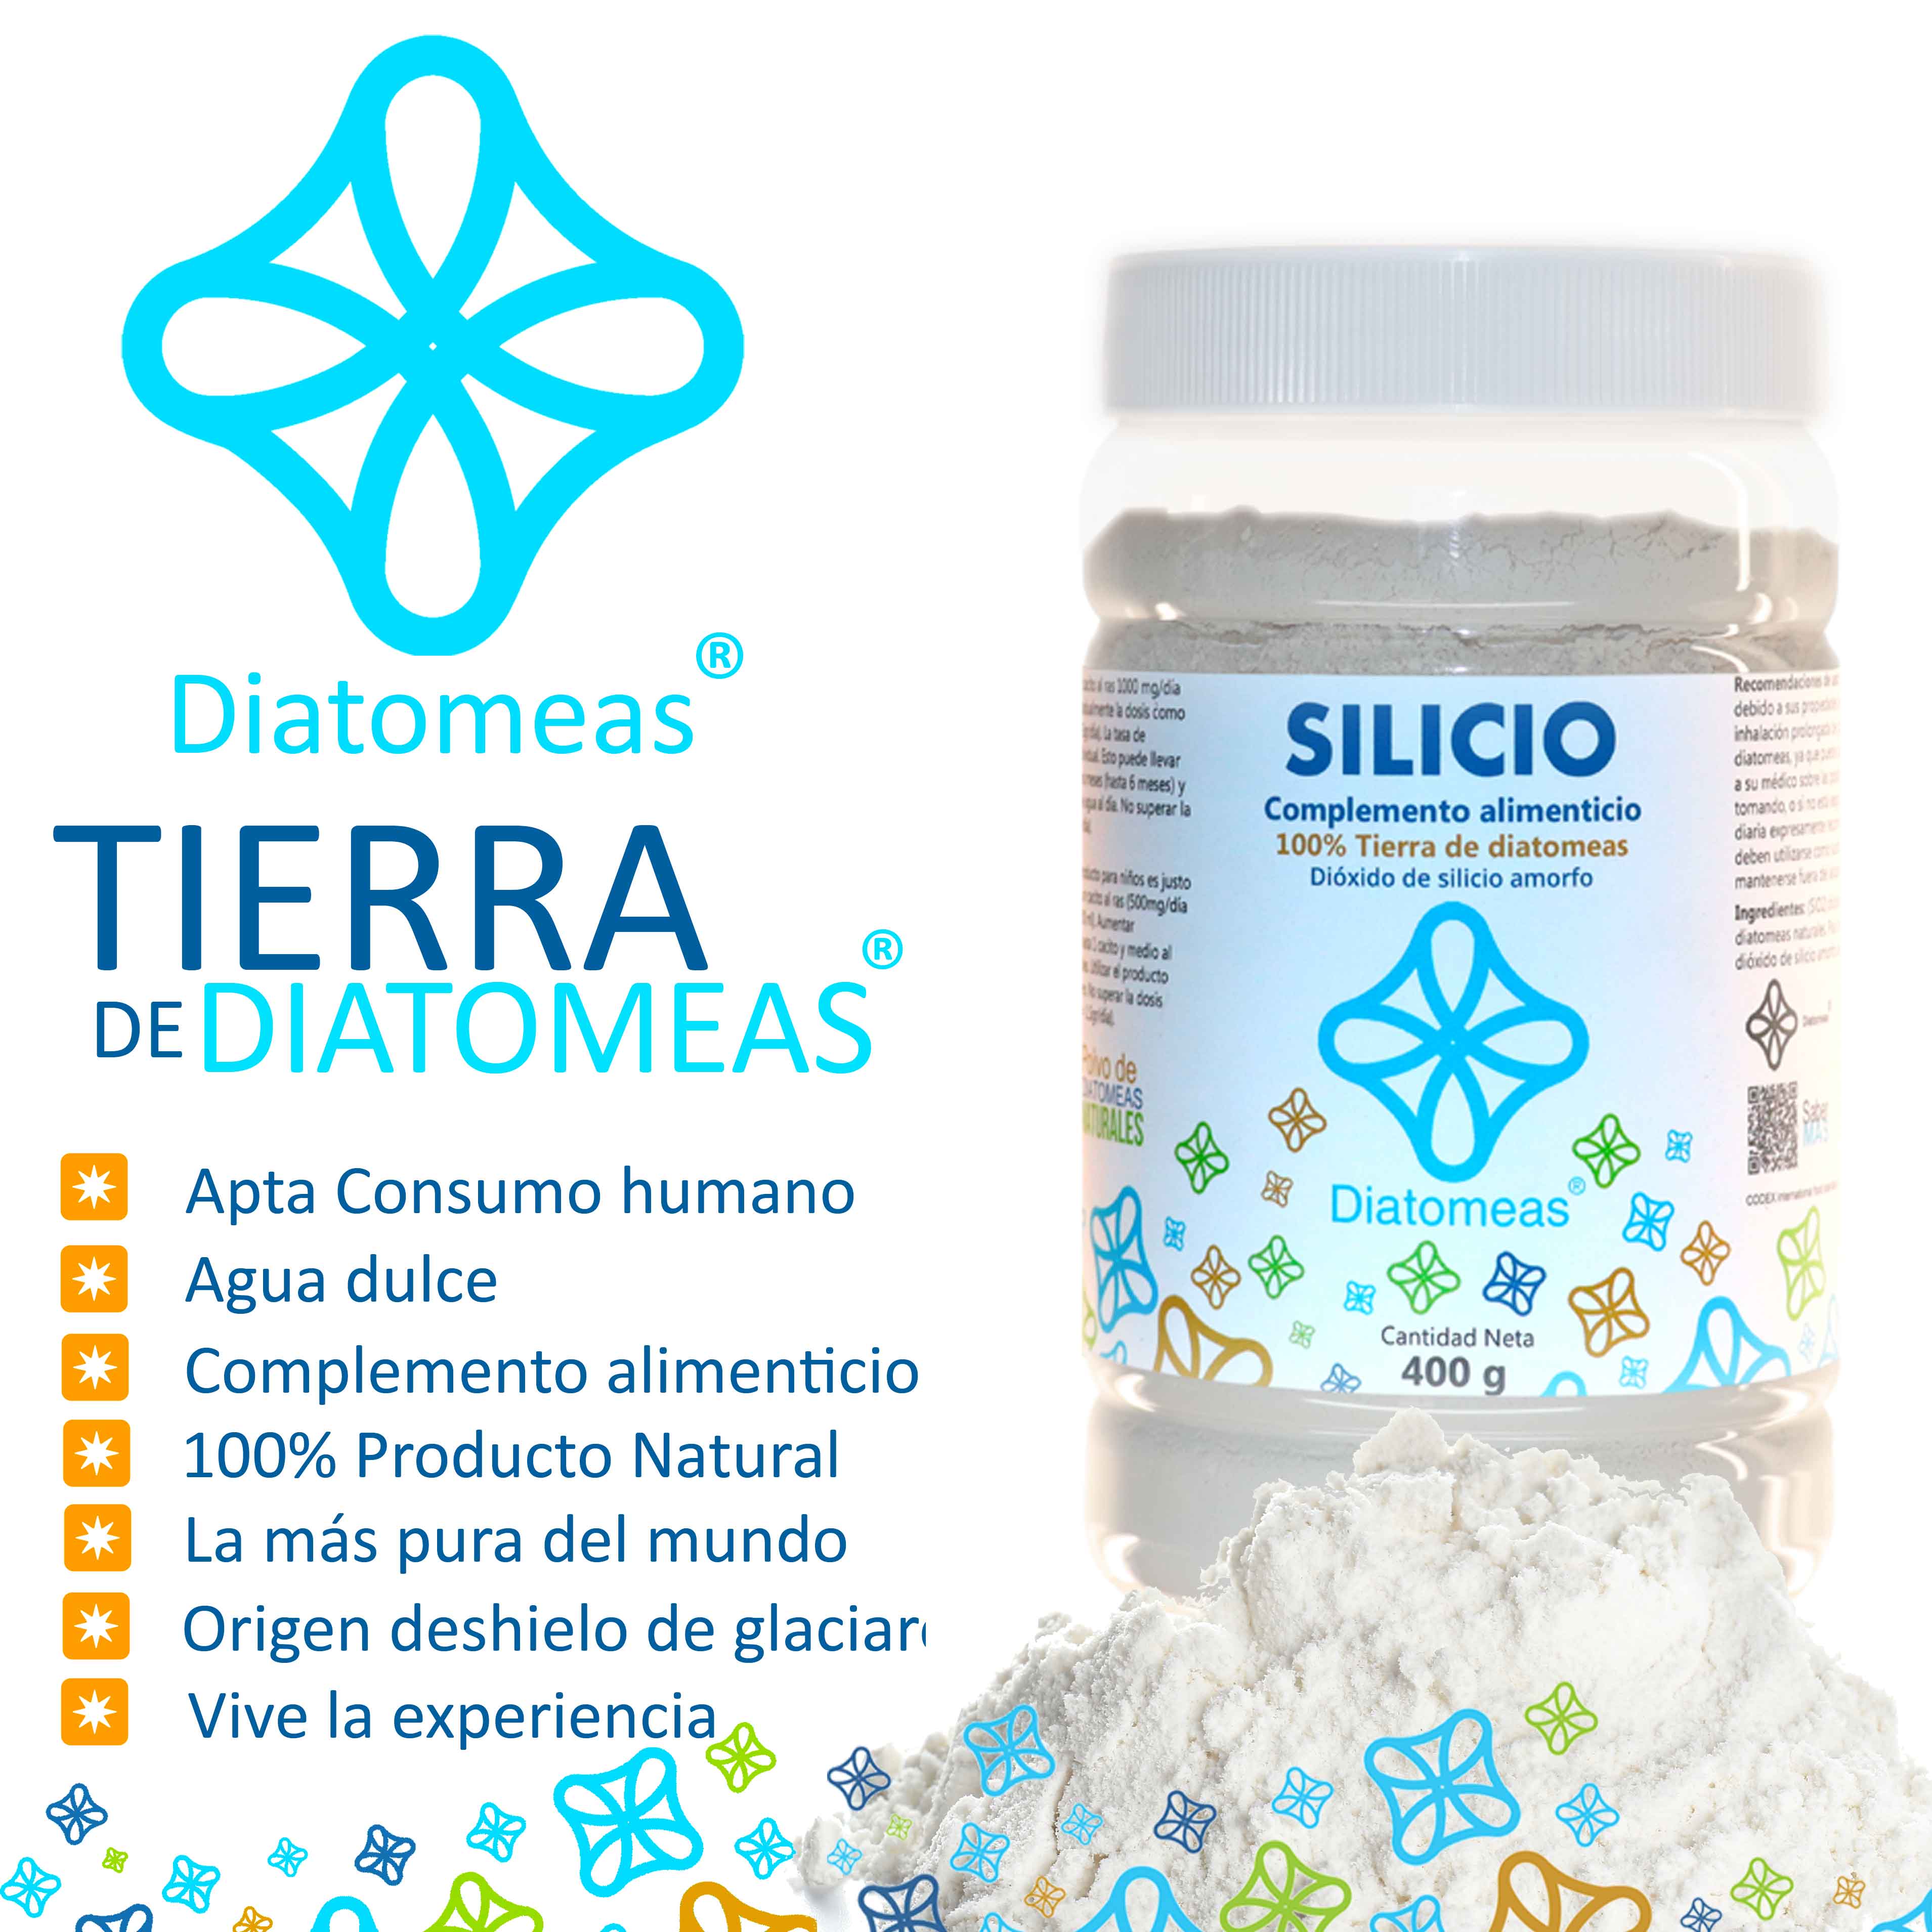 Silicio 100% tierra de diatomeas de uso alimentario 150g Diatomeas Tierra  diatomeas 100% silicio uso alimentario 150g